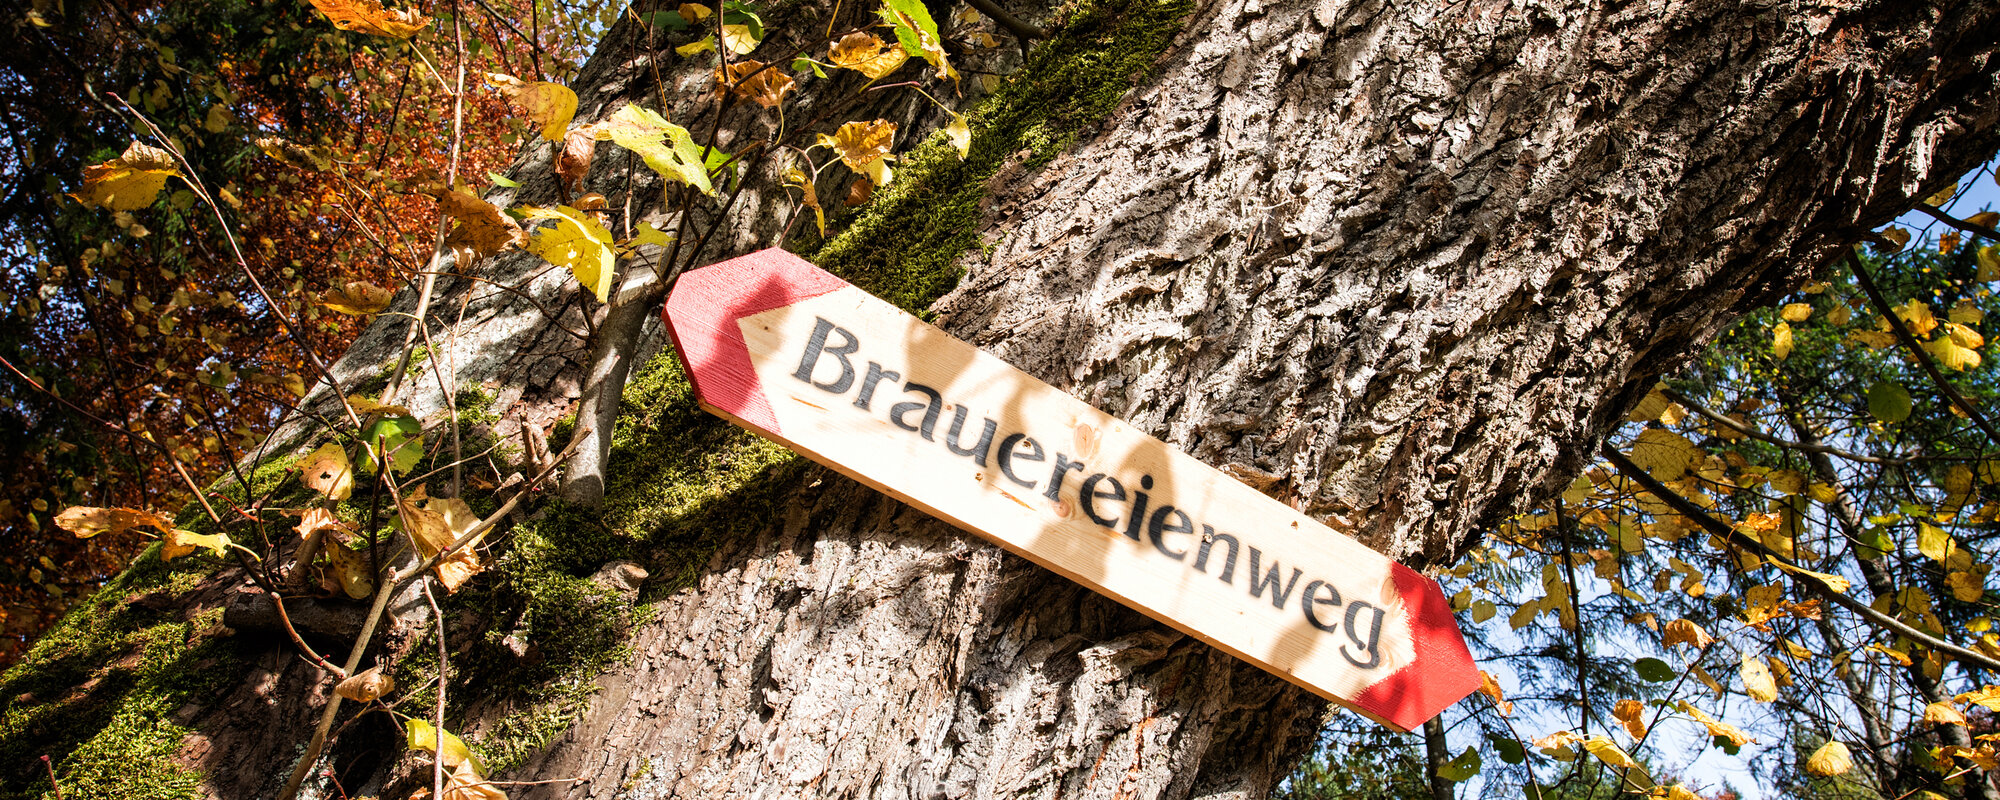 An einem Baum hängt ein Holzschild mit der Aufschrift Brauereienweg.